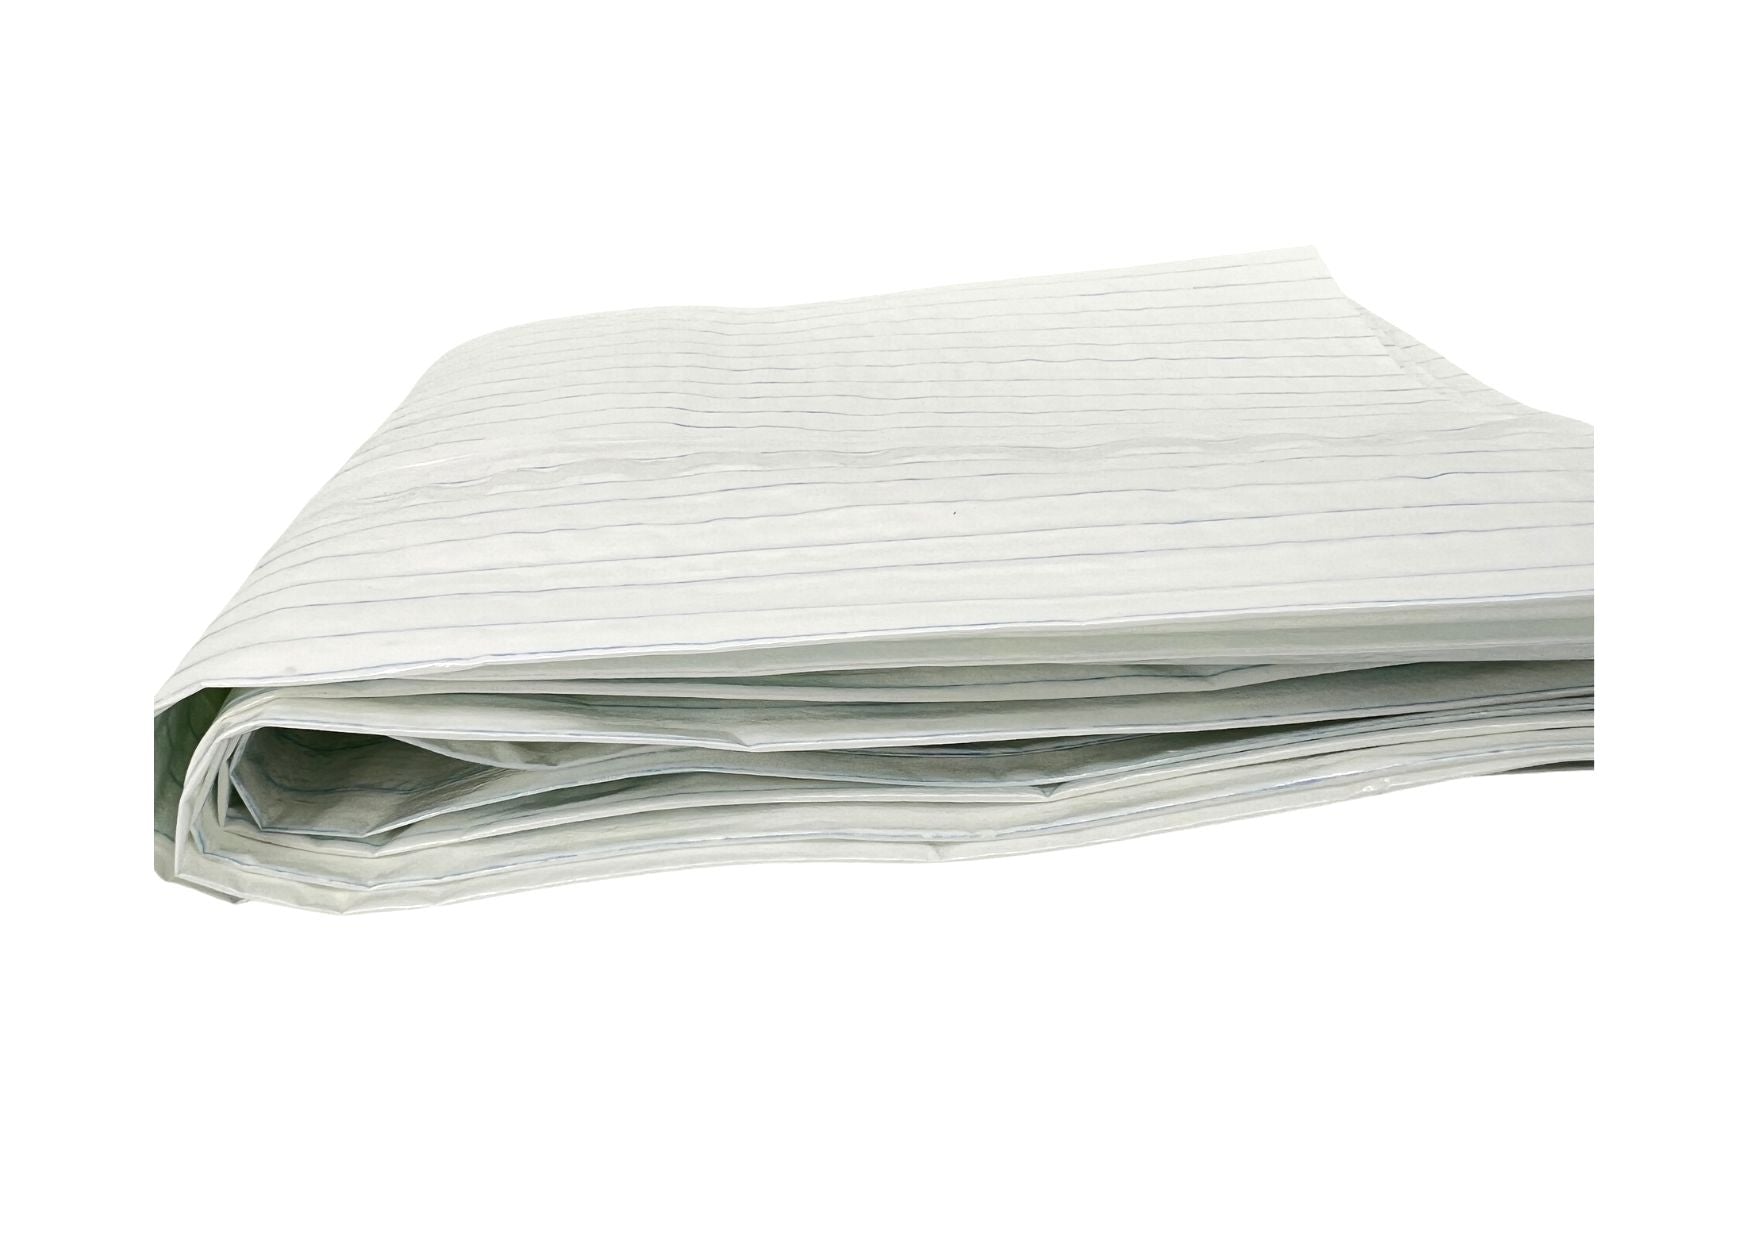 Stretcher sheet "Maxi-Sheet-Super", 80 x 210 / 100 pieces